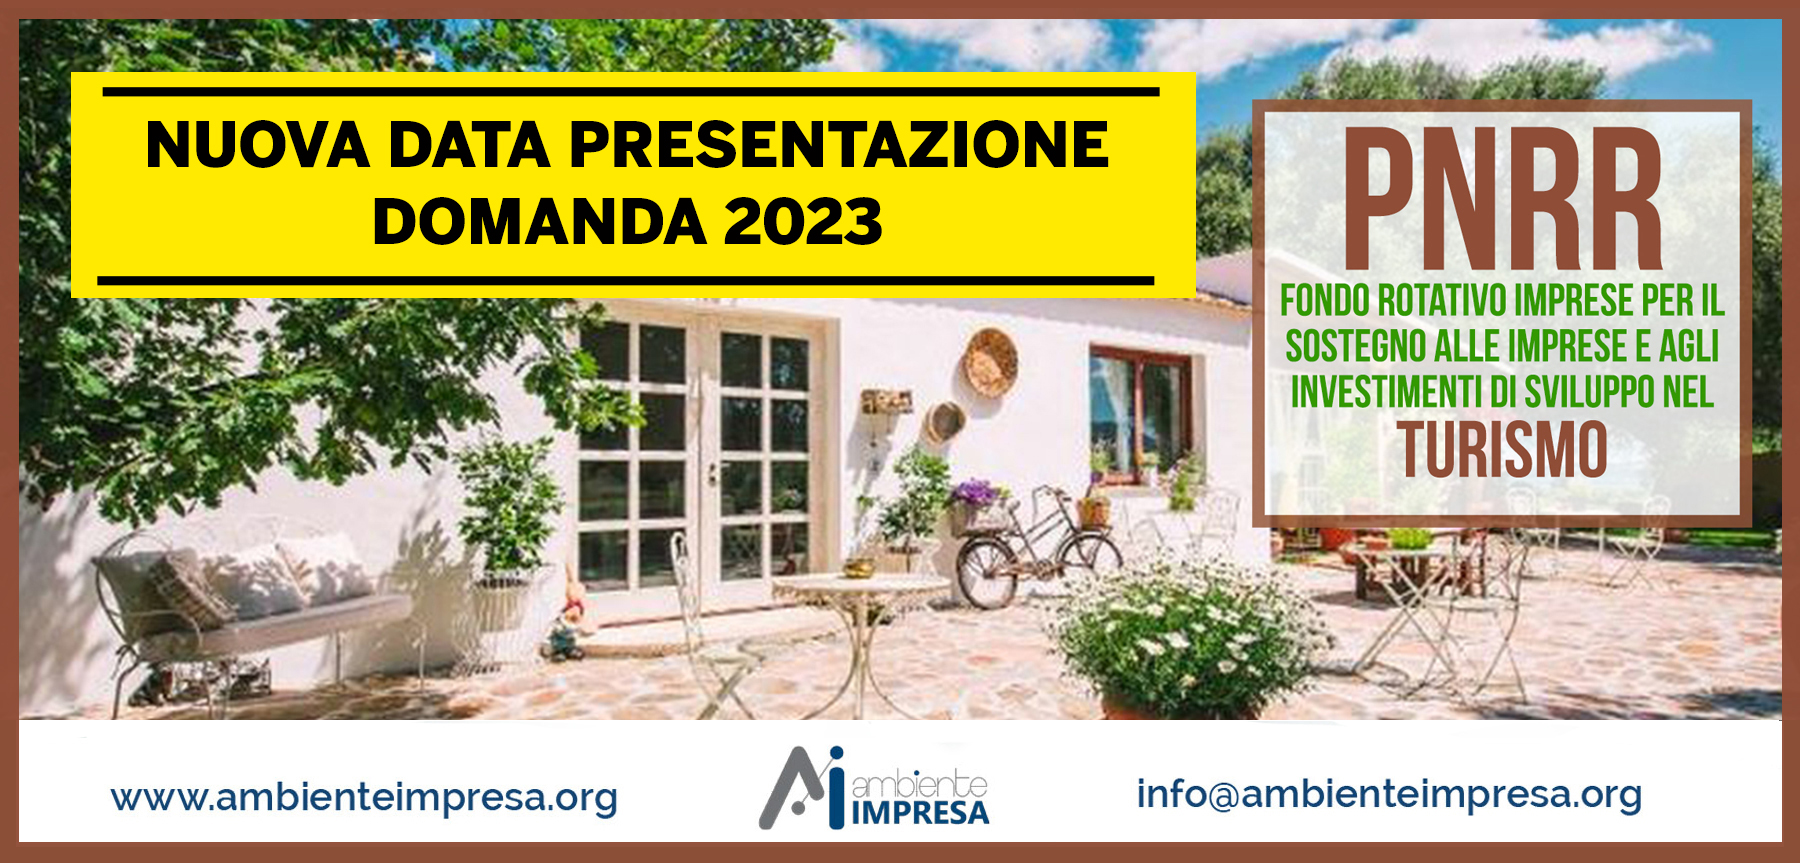 PNRR Fondo Rotativo Turismo 2023 - AMBIENTE IMPRESA SRL -Cagliari